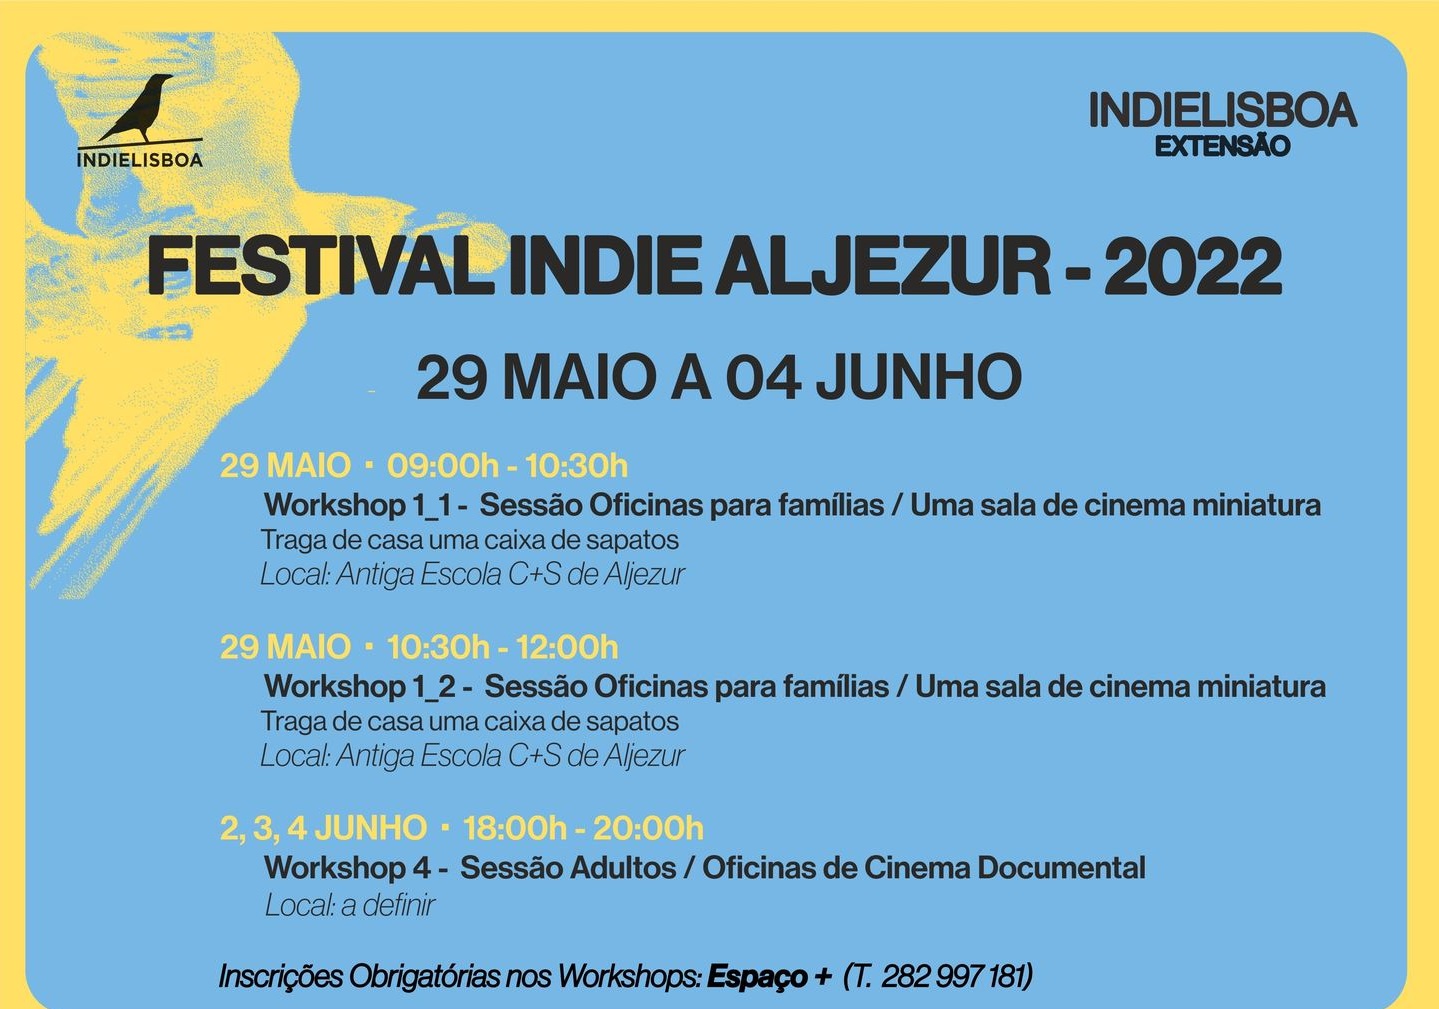 Festival IndieAljezur 2022 durante 7 dias no Espaço +